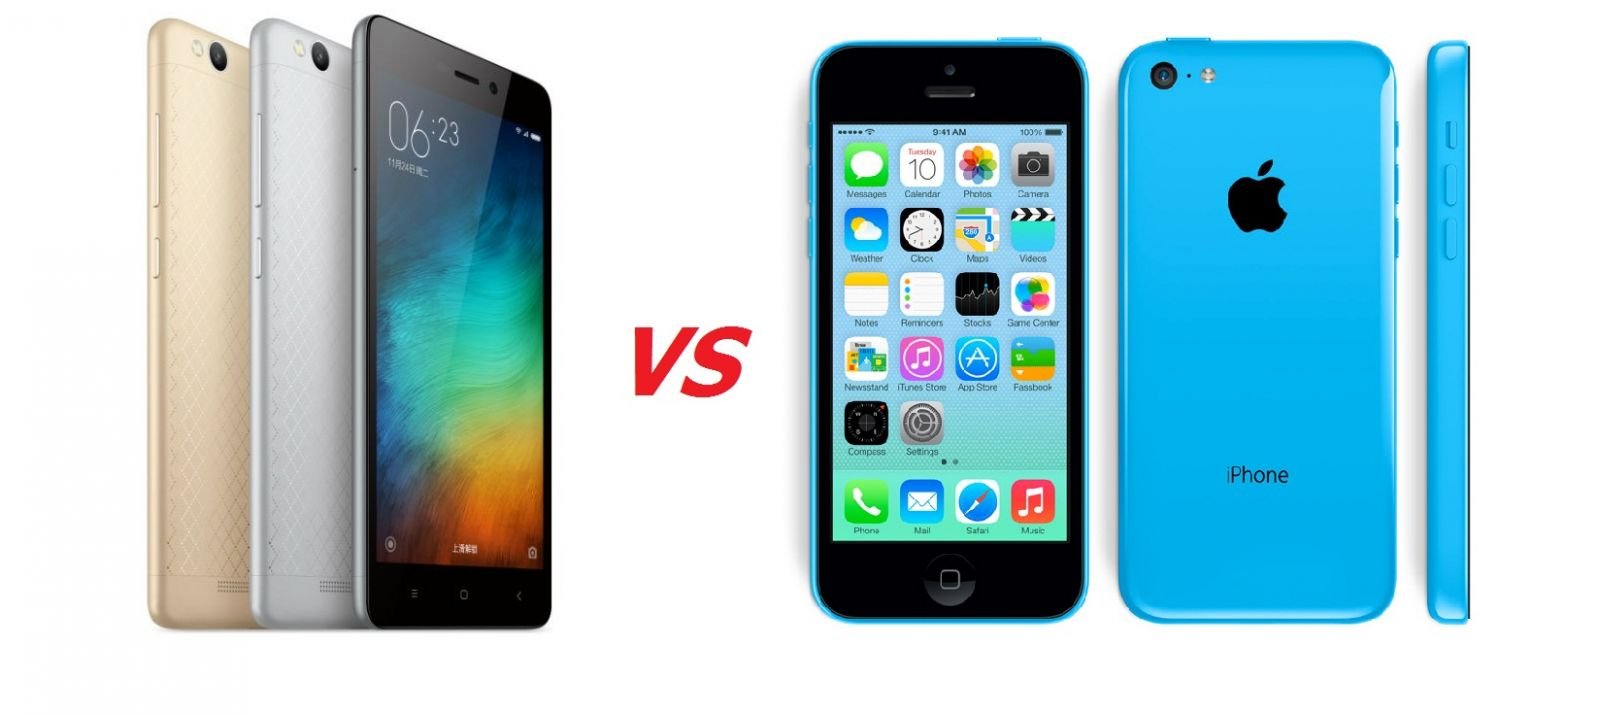 iPhone 5c Lock vs Xiaomi Redmi 3: Thiết kế nào ấn tượng hơn?